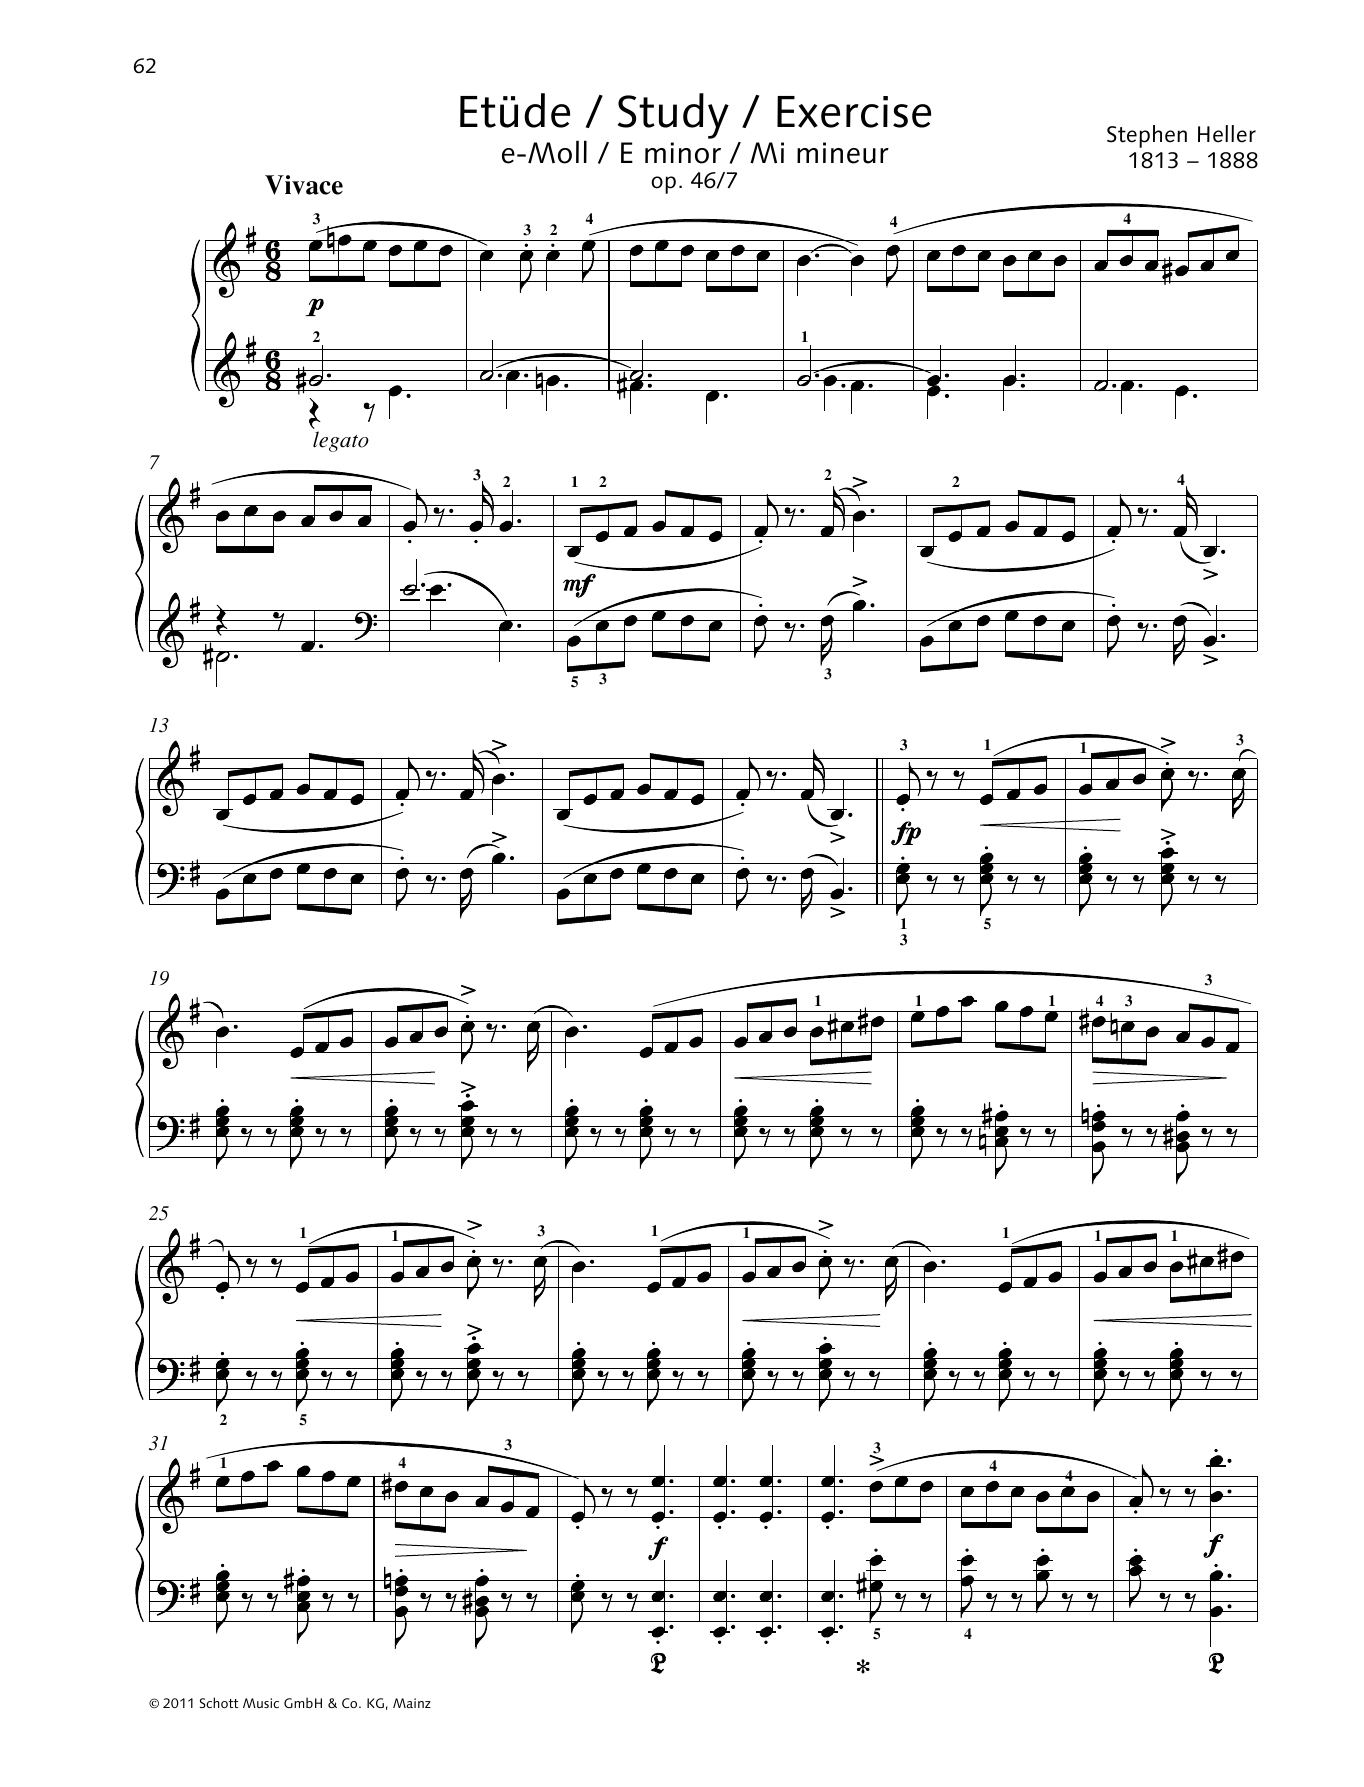 Download Stephen Heller Study E minor Sheet Music